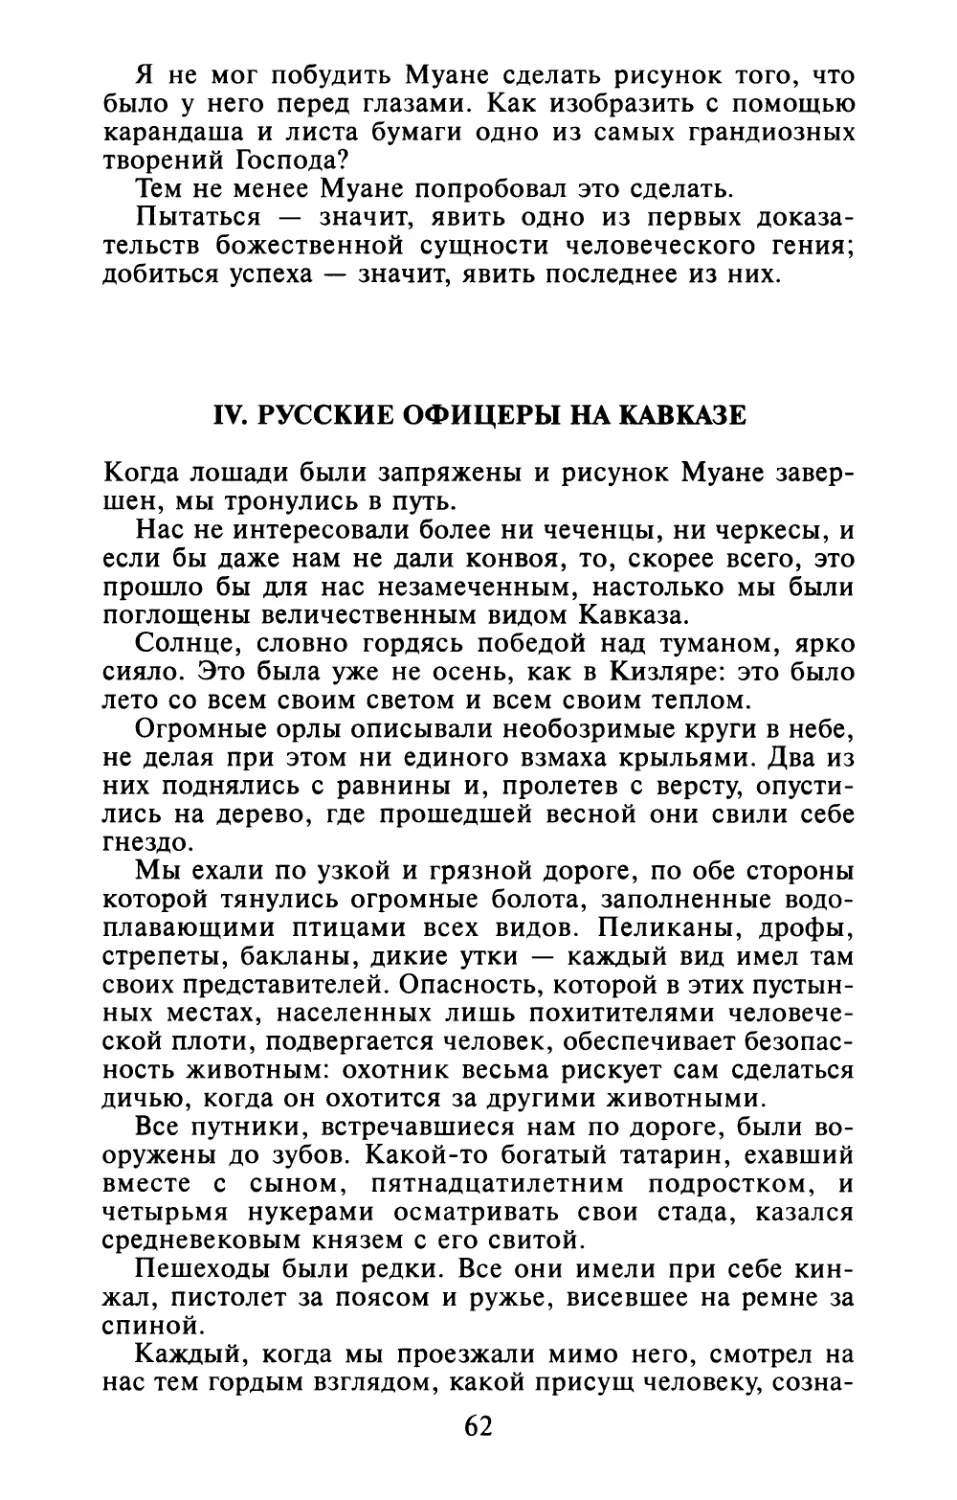 IV. Русские офицеры на Кавказе